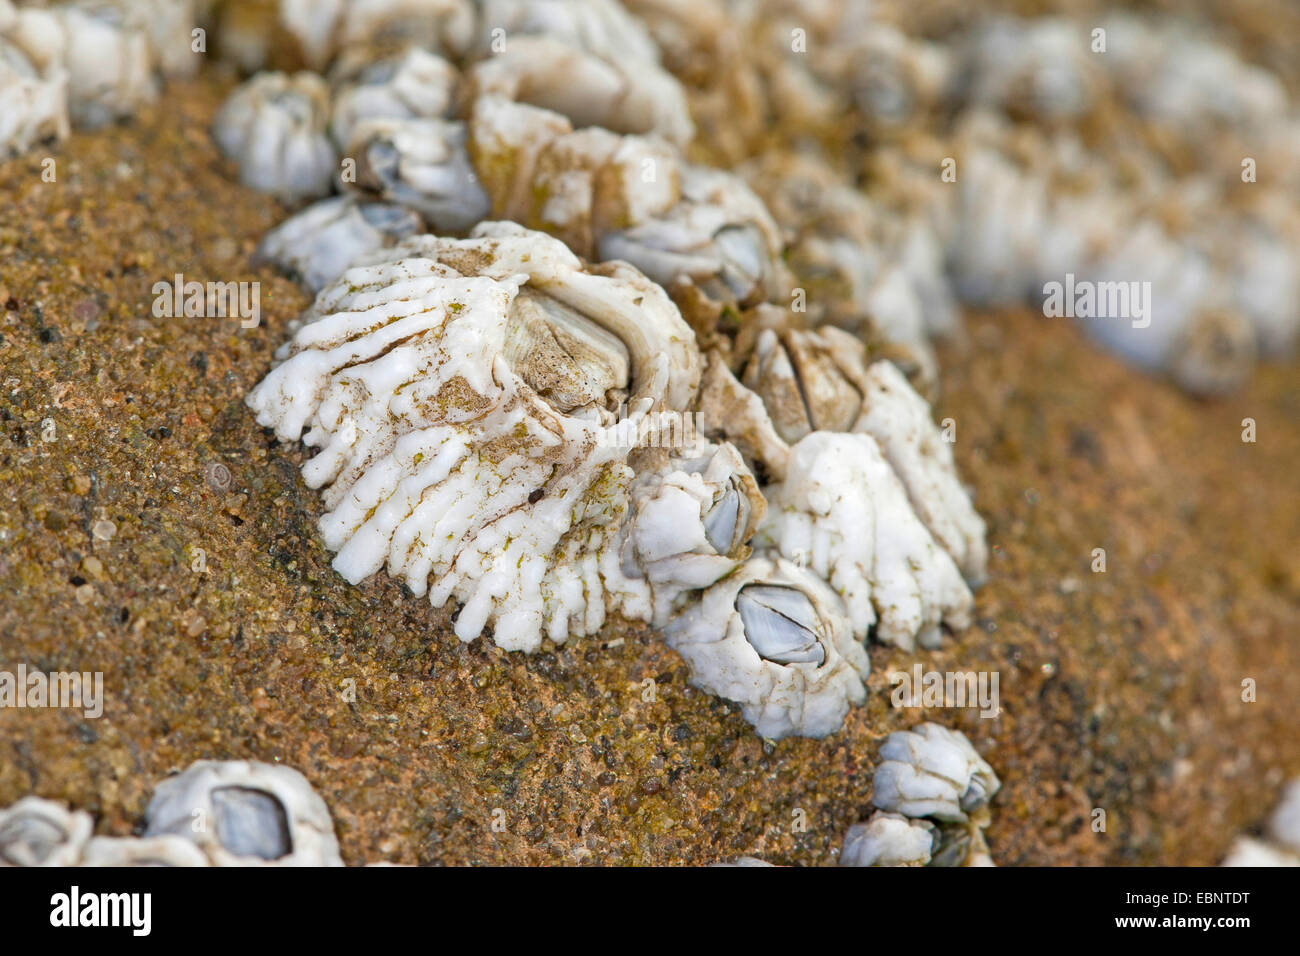 Nordfelsen Barnacle, Eichel Barnacle, gemeinsame Rock Barnacle (Semibalanus Balanoides, Balanus Balanoides), auf einem Felsen am Meeresufer, Deutschland Stockfoto